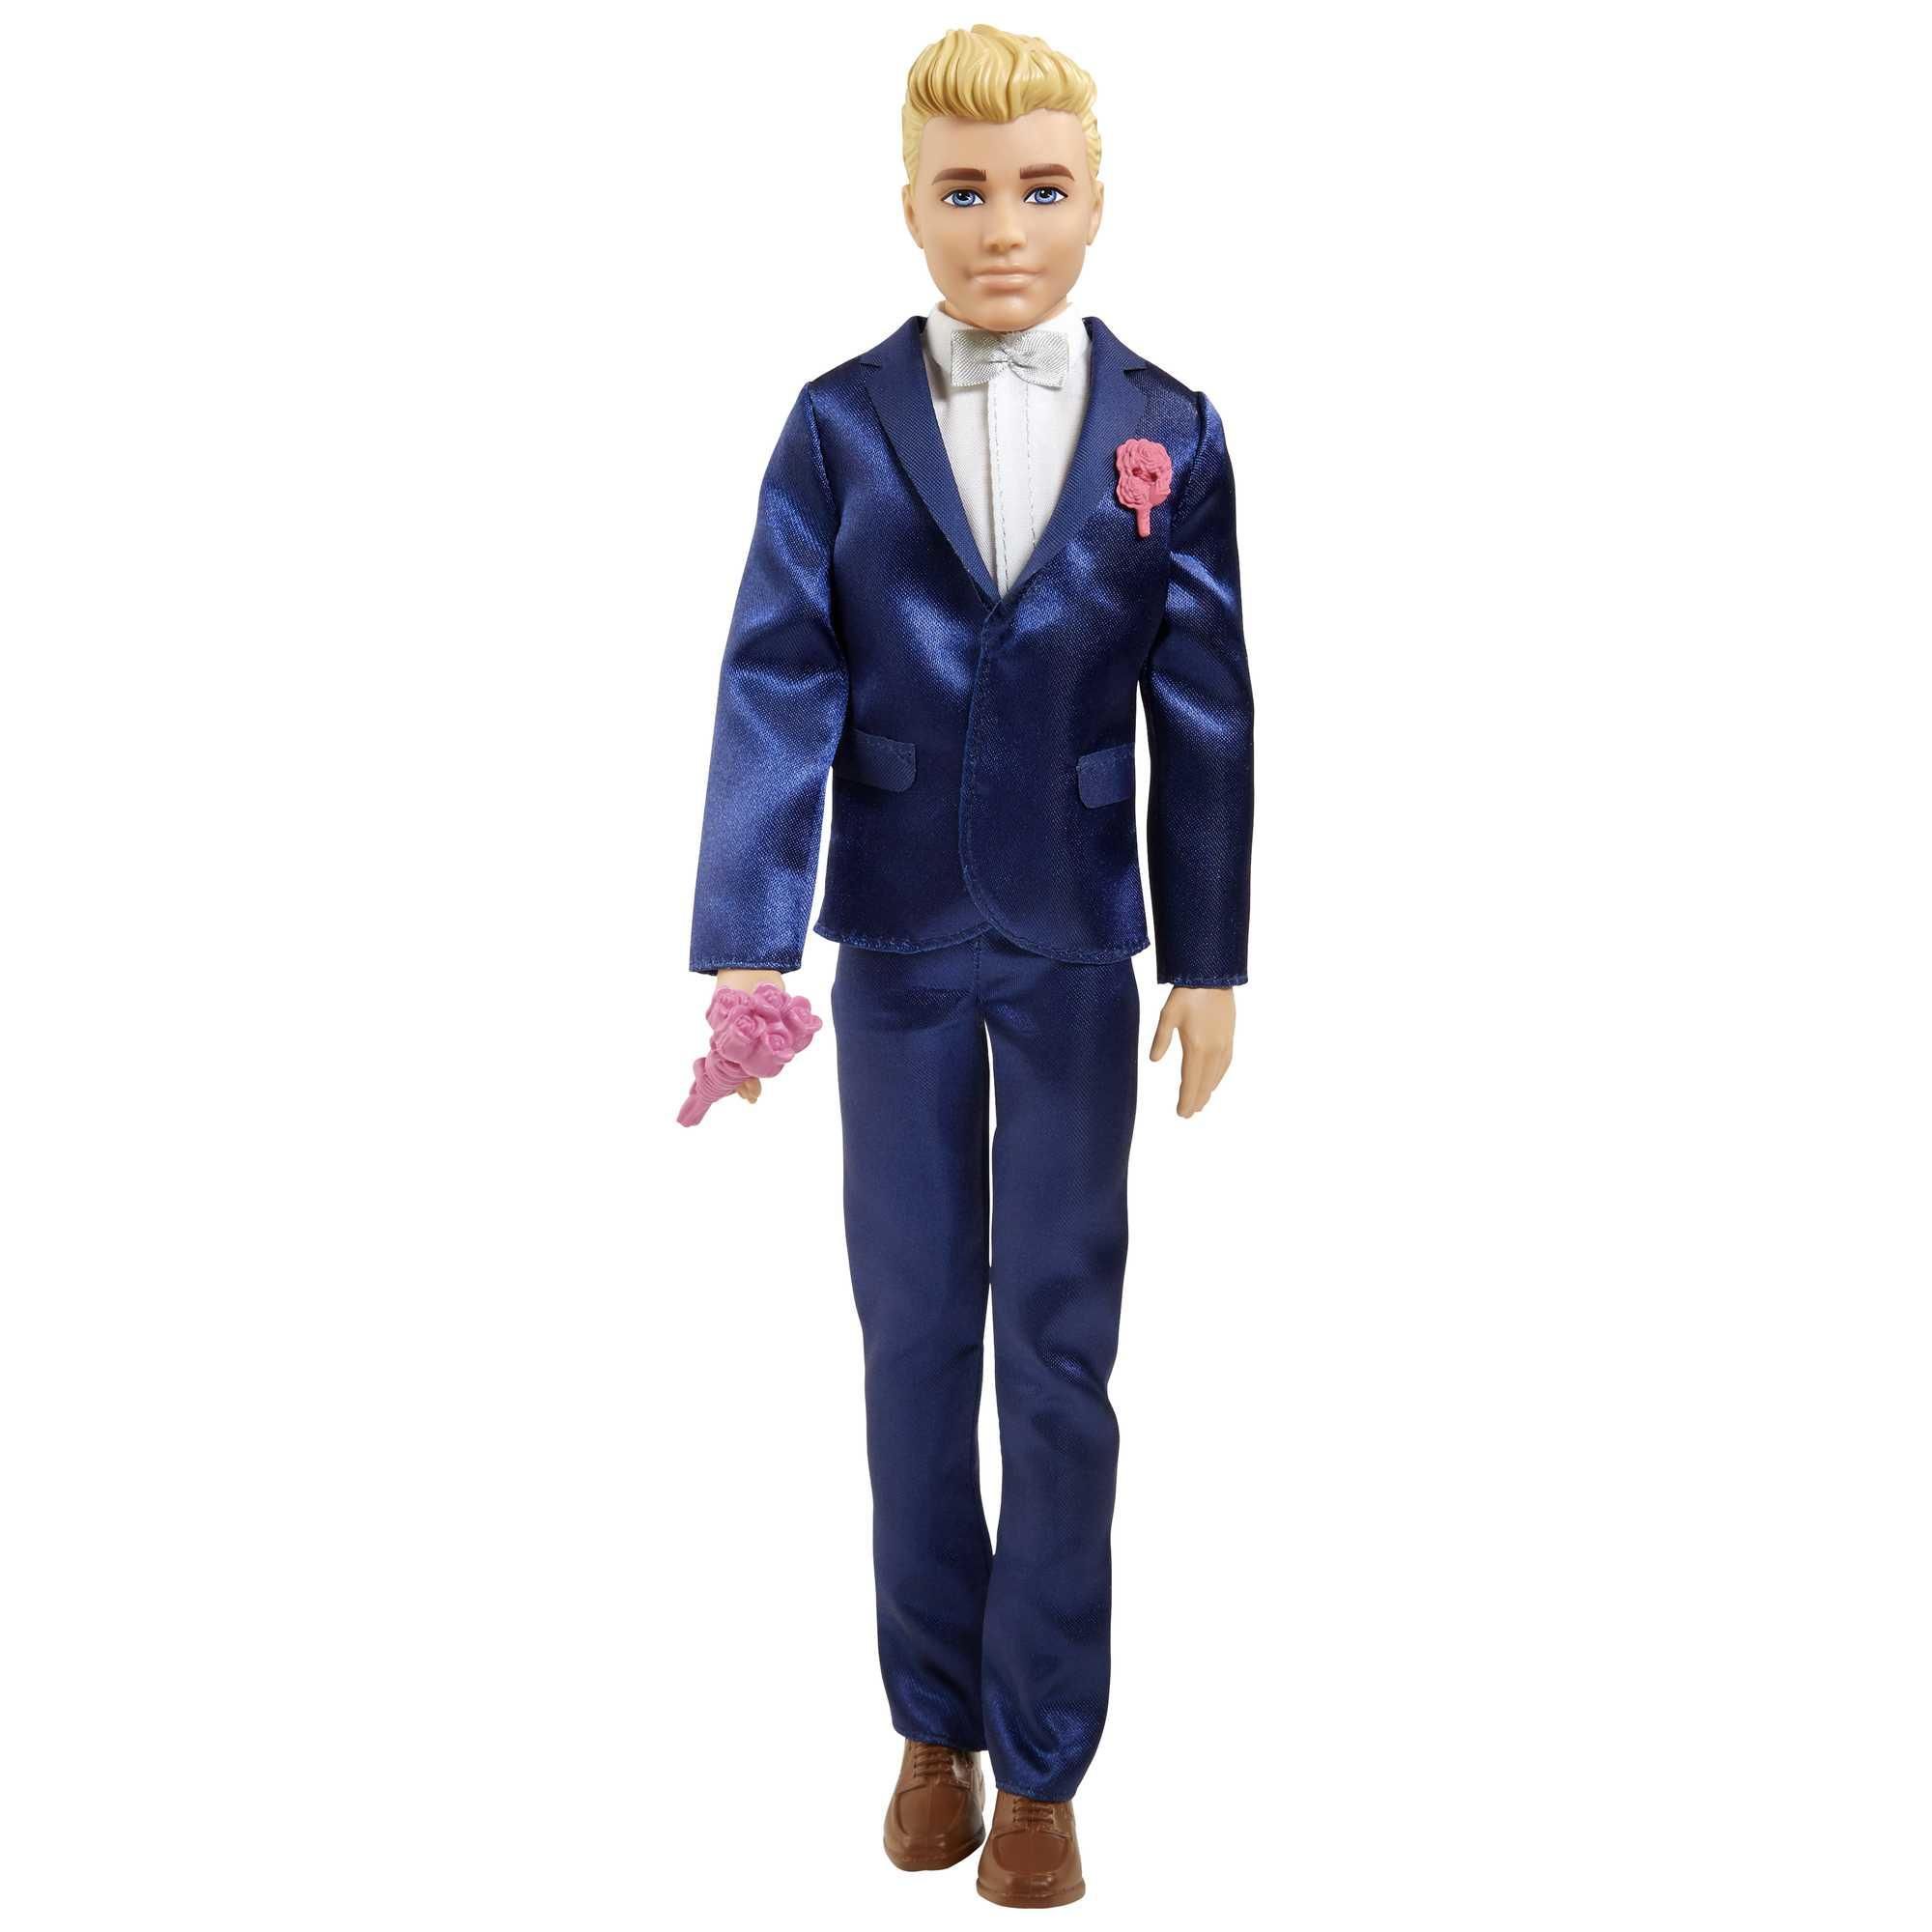 Mattel Barbie Fairytale Ken